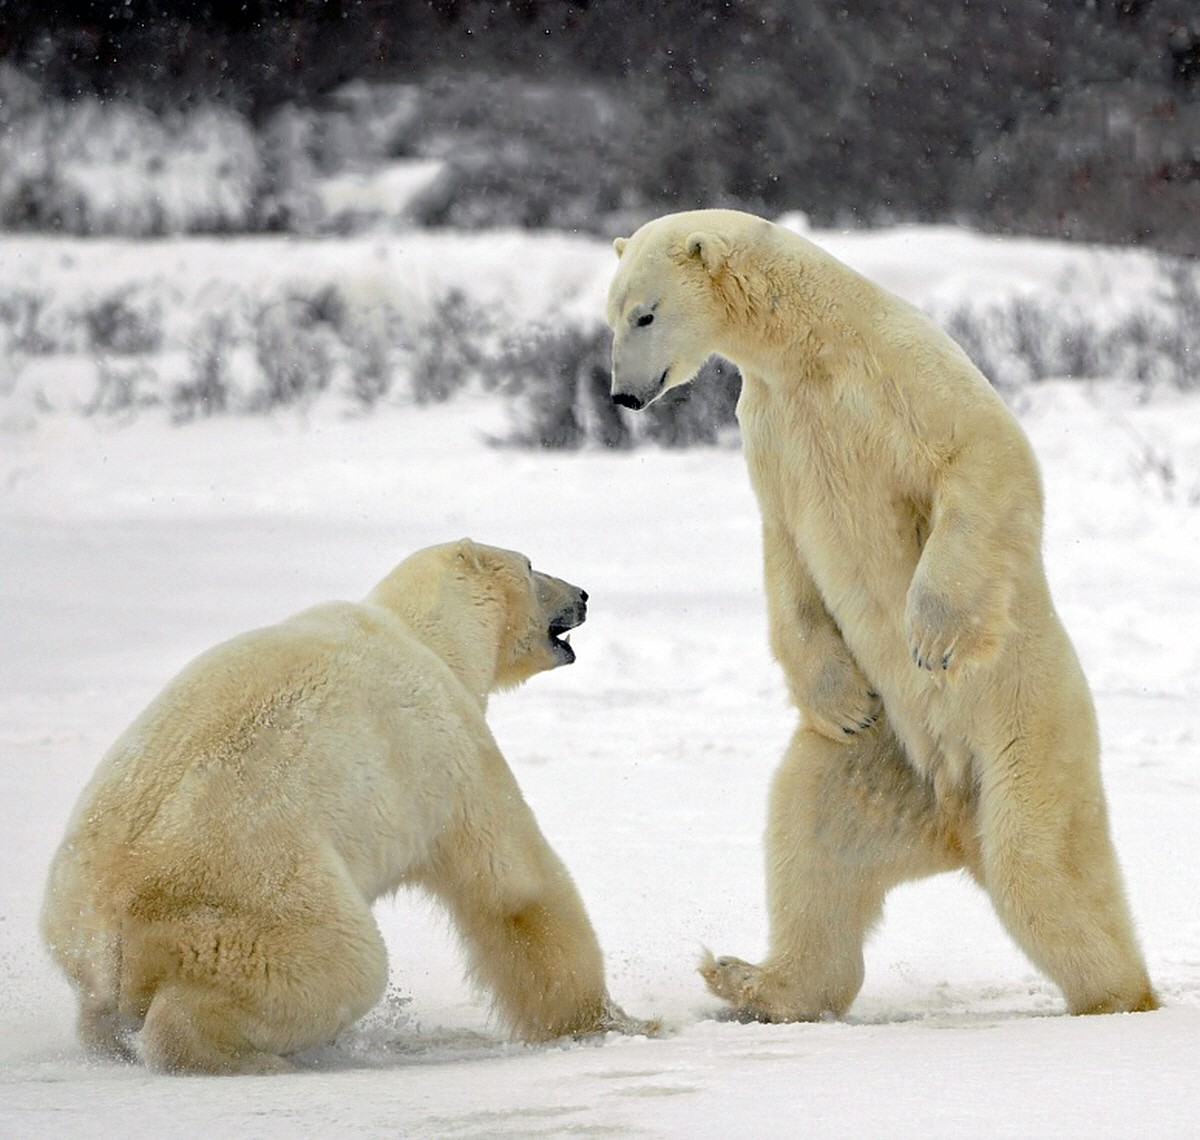 http://02varvara.files.wordpress.com/2012/08/00a-russian-polar-bear-fight-08-12.jpg